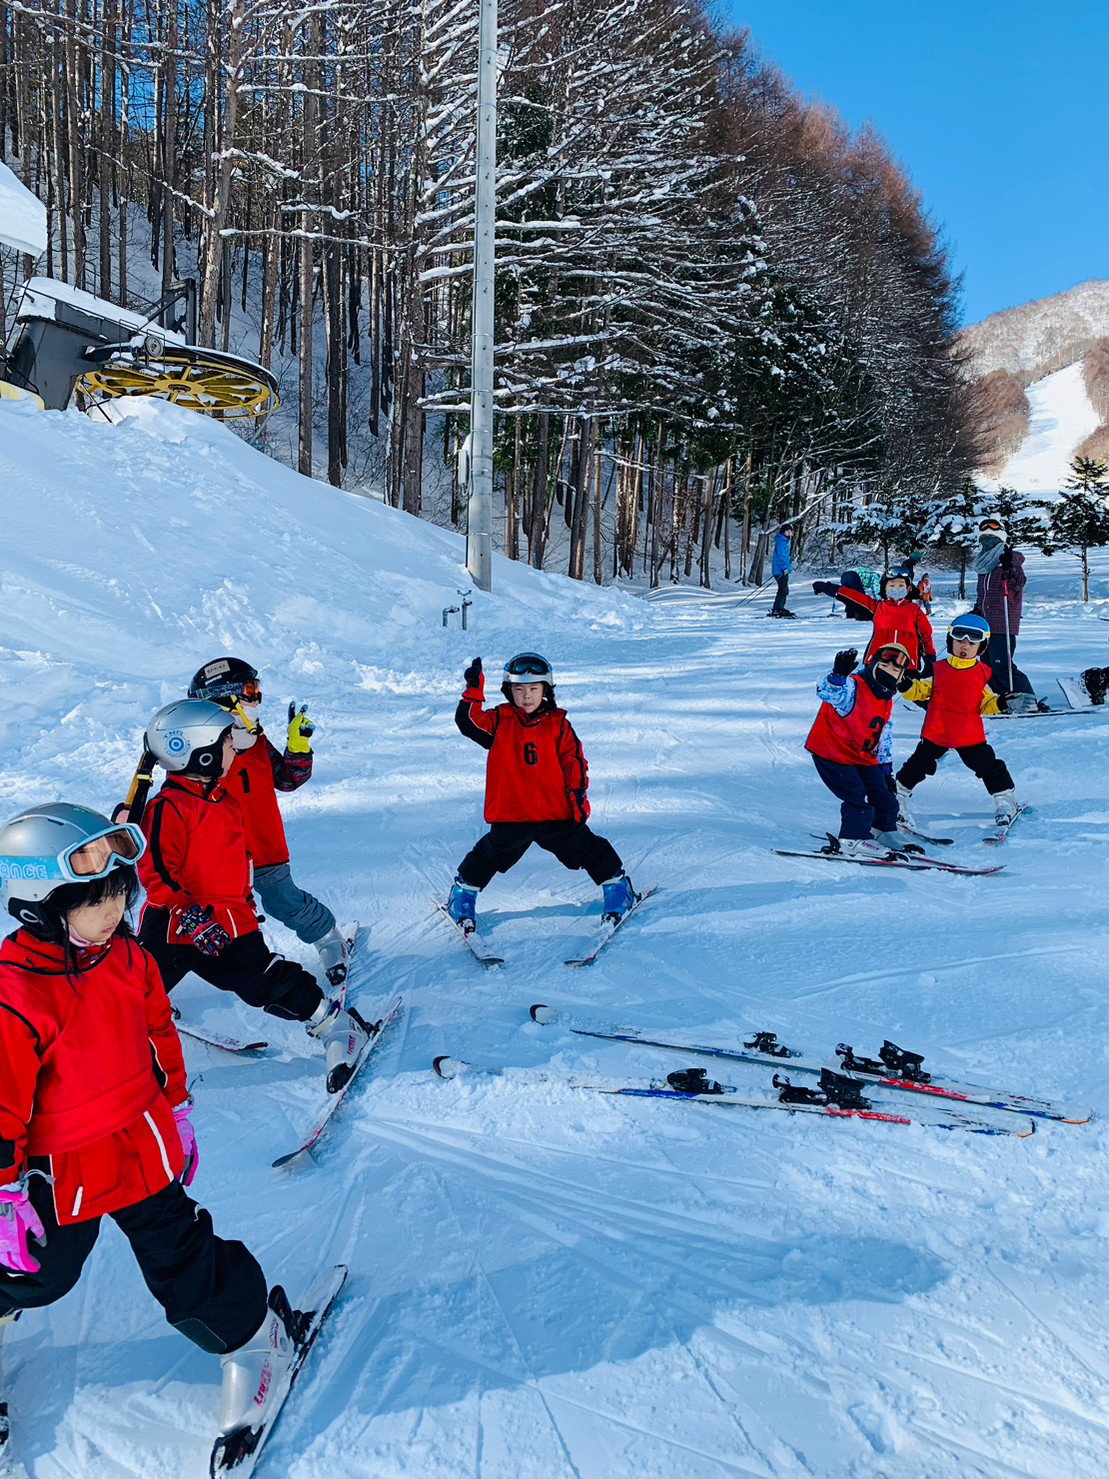 フロンティアキッズ ブログ記事 冬スキーキャンプのお知らせのイメージサムネイル画像